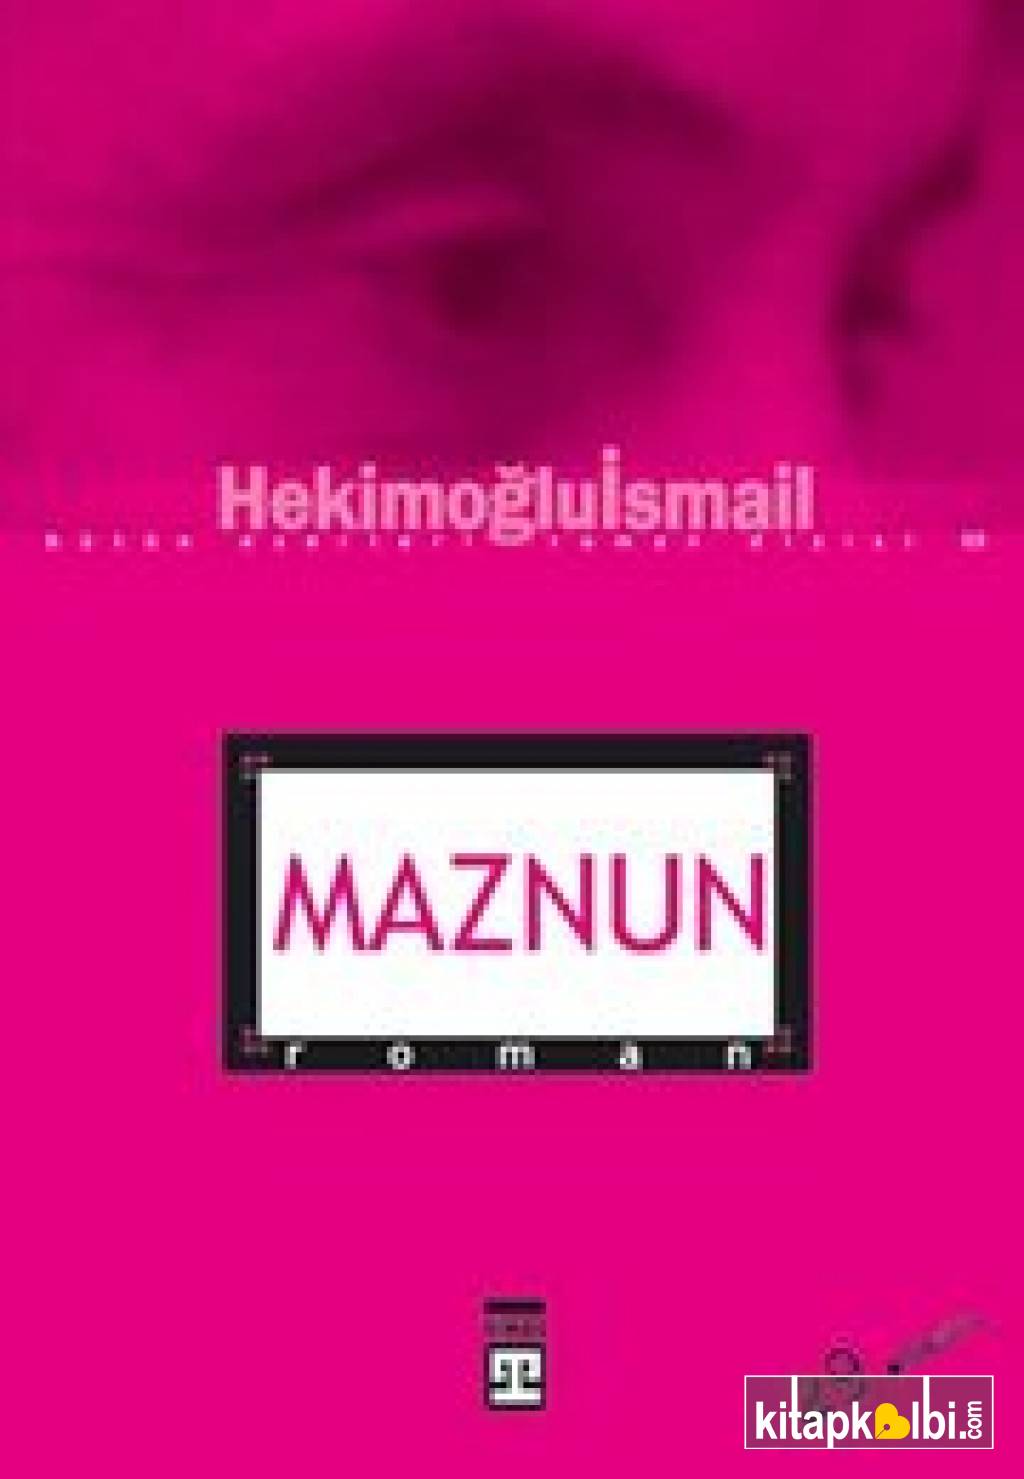 Maznun